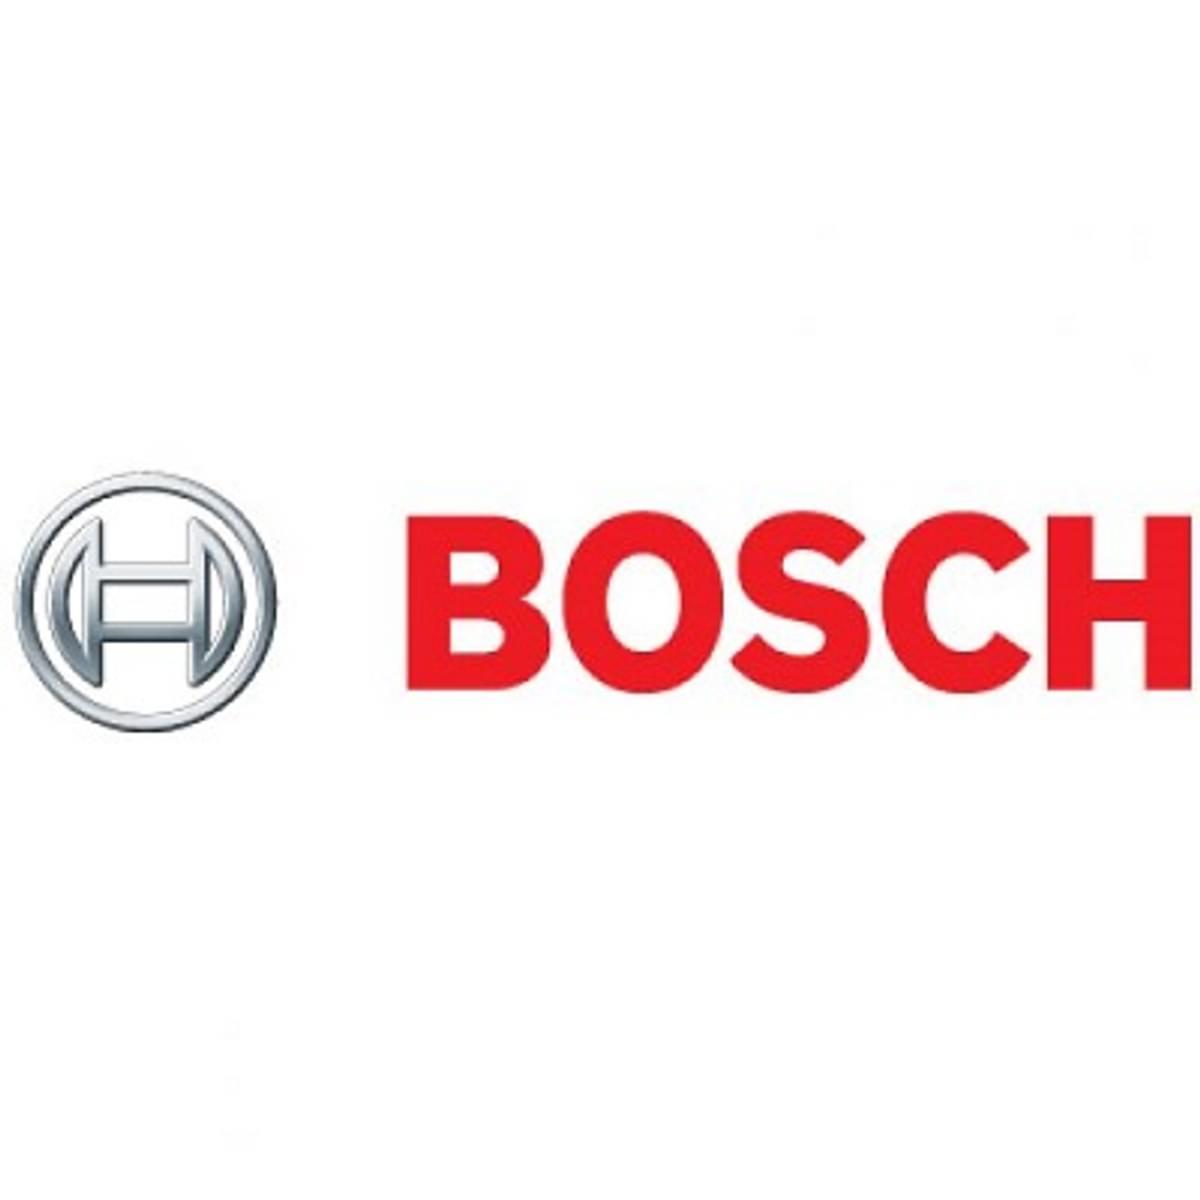 Bosch: AI moet met minder data kunnen image